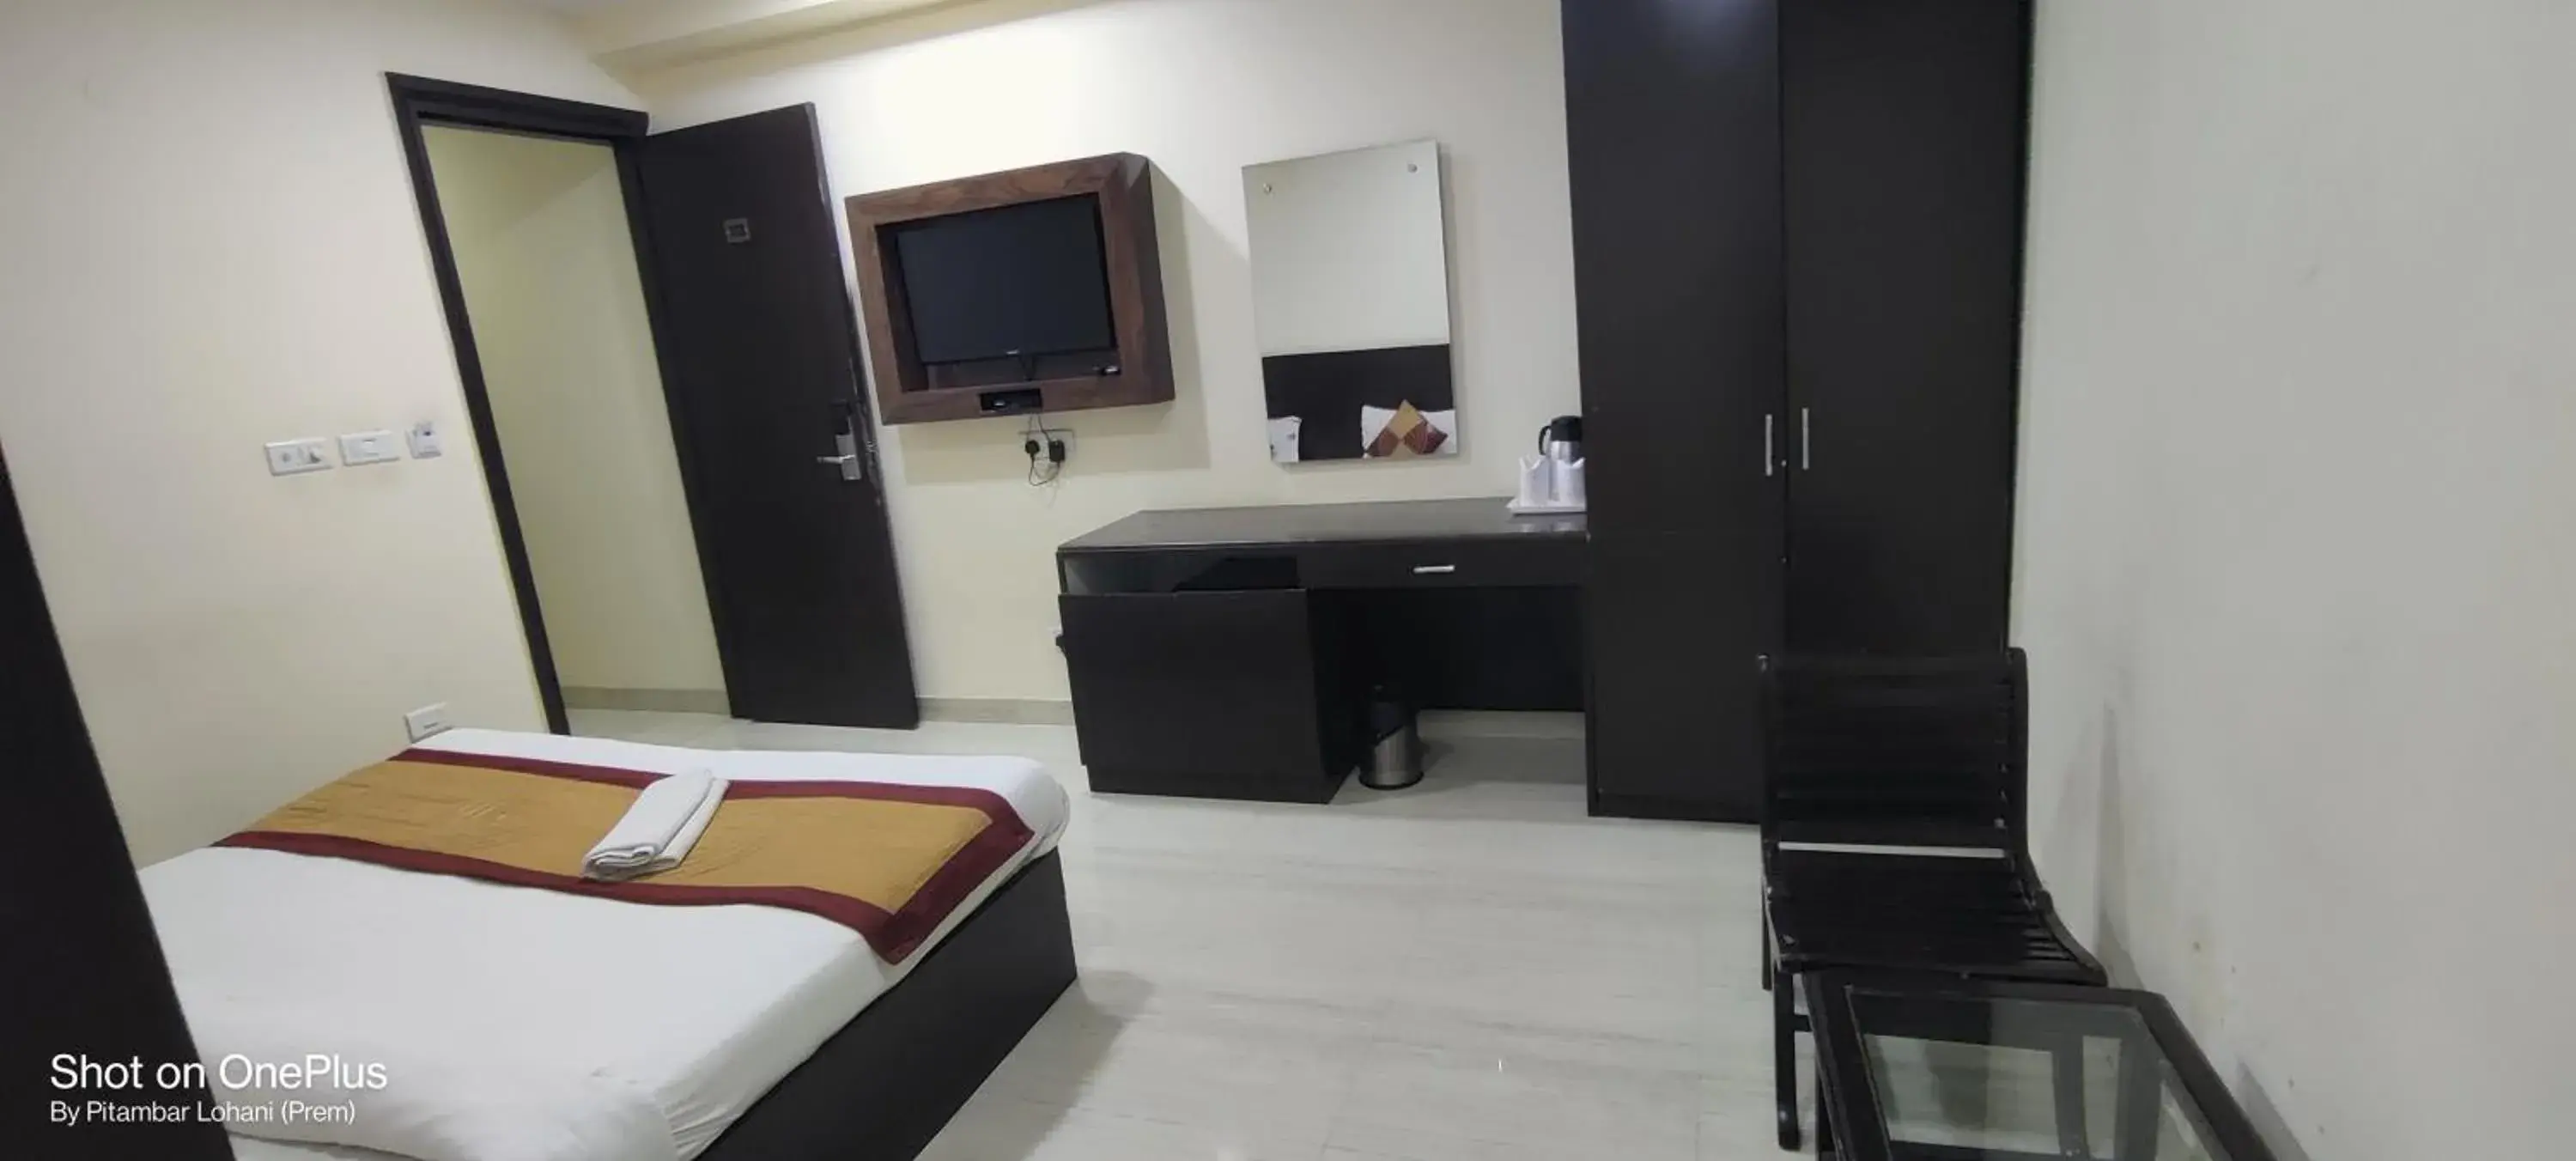 Bedroom, TV/Entertainment Center in Hotel Kings Inn, Karol Bagh, New Delhi